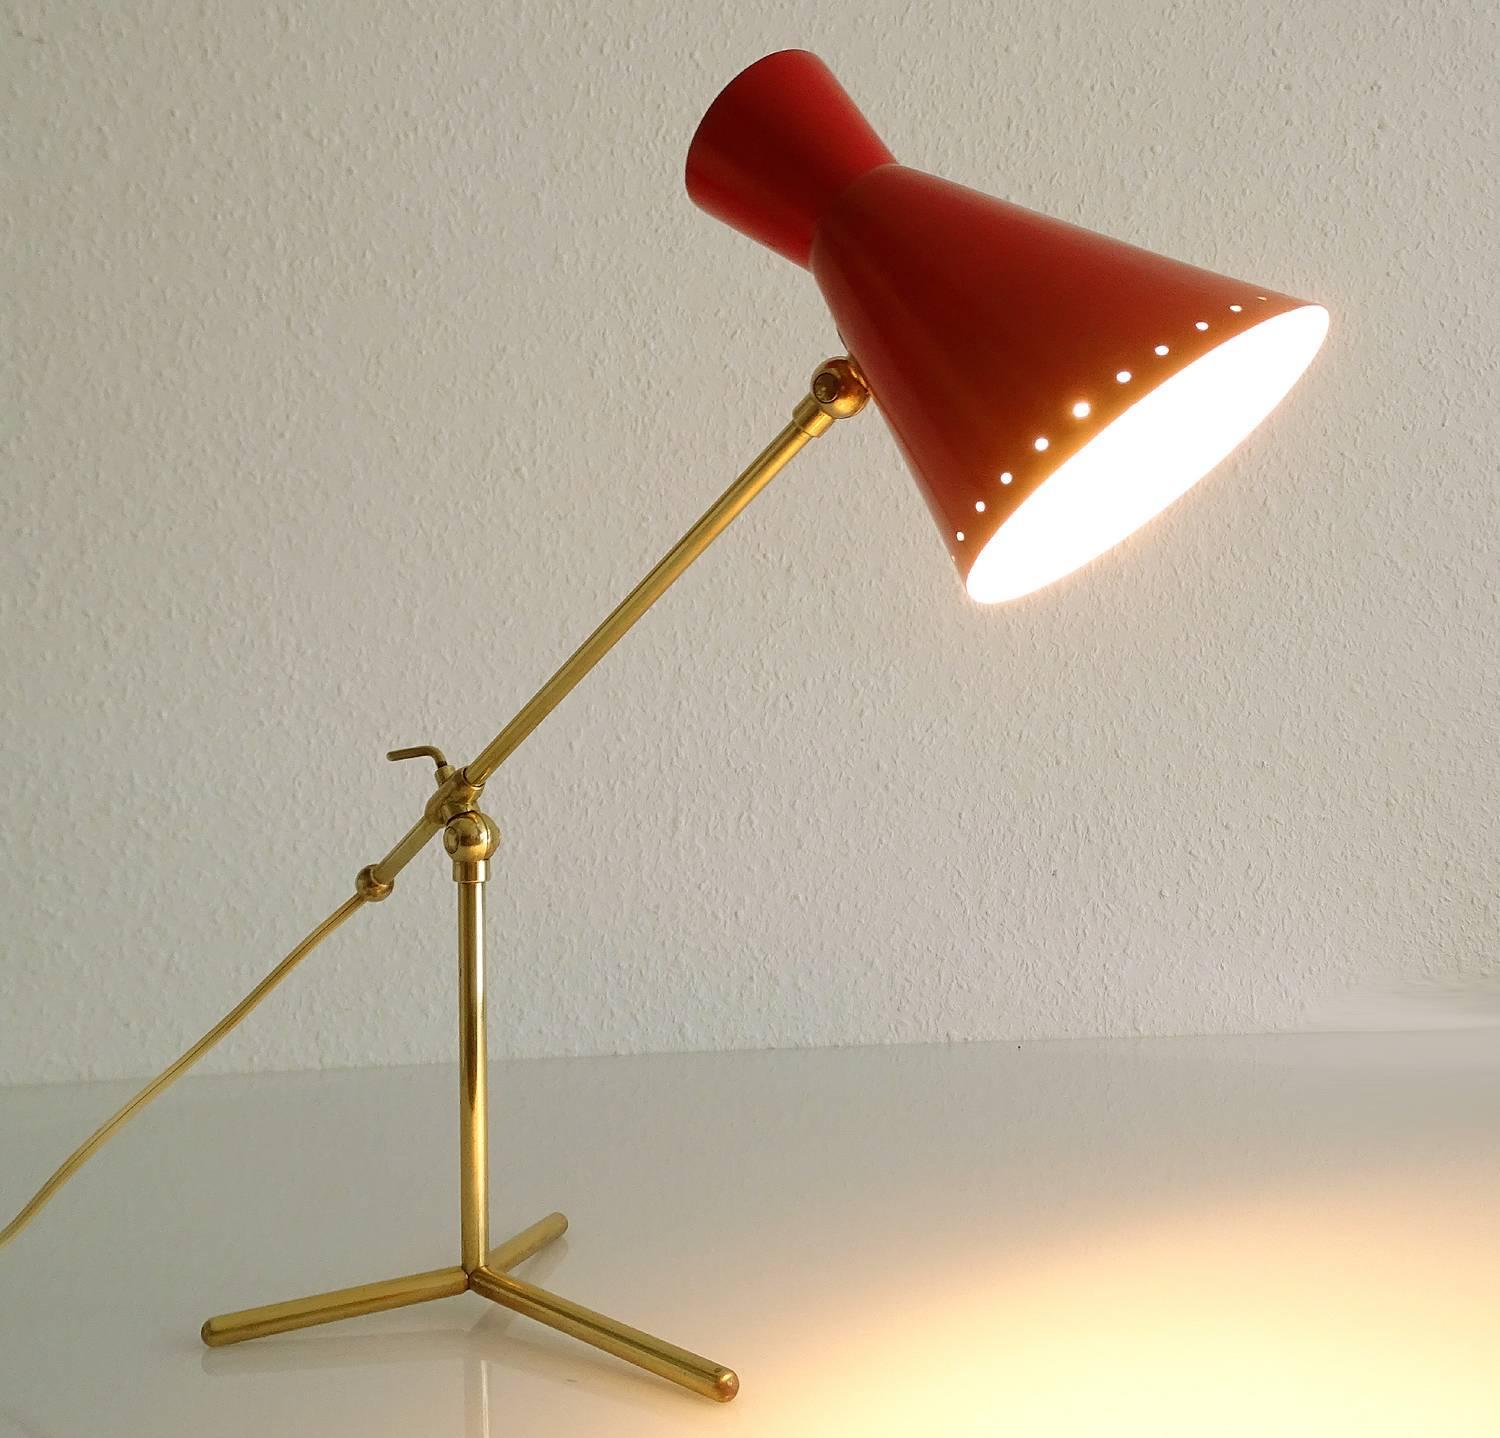 Stilnovo Design Desk Lamp Brass Modernist Design 50s Mid Century Modern